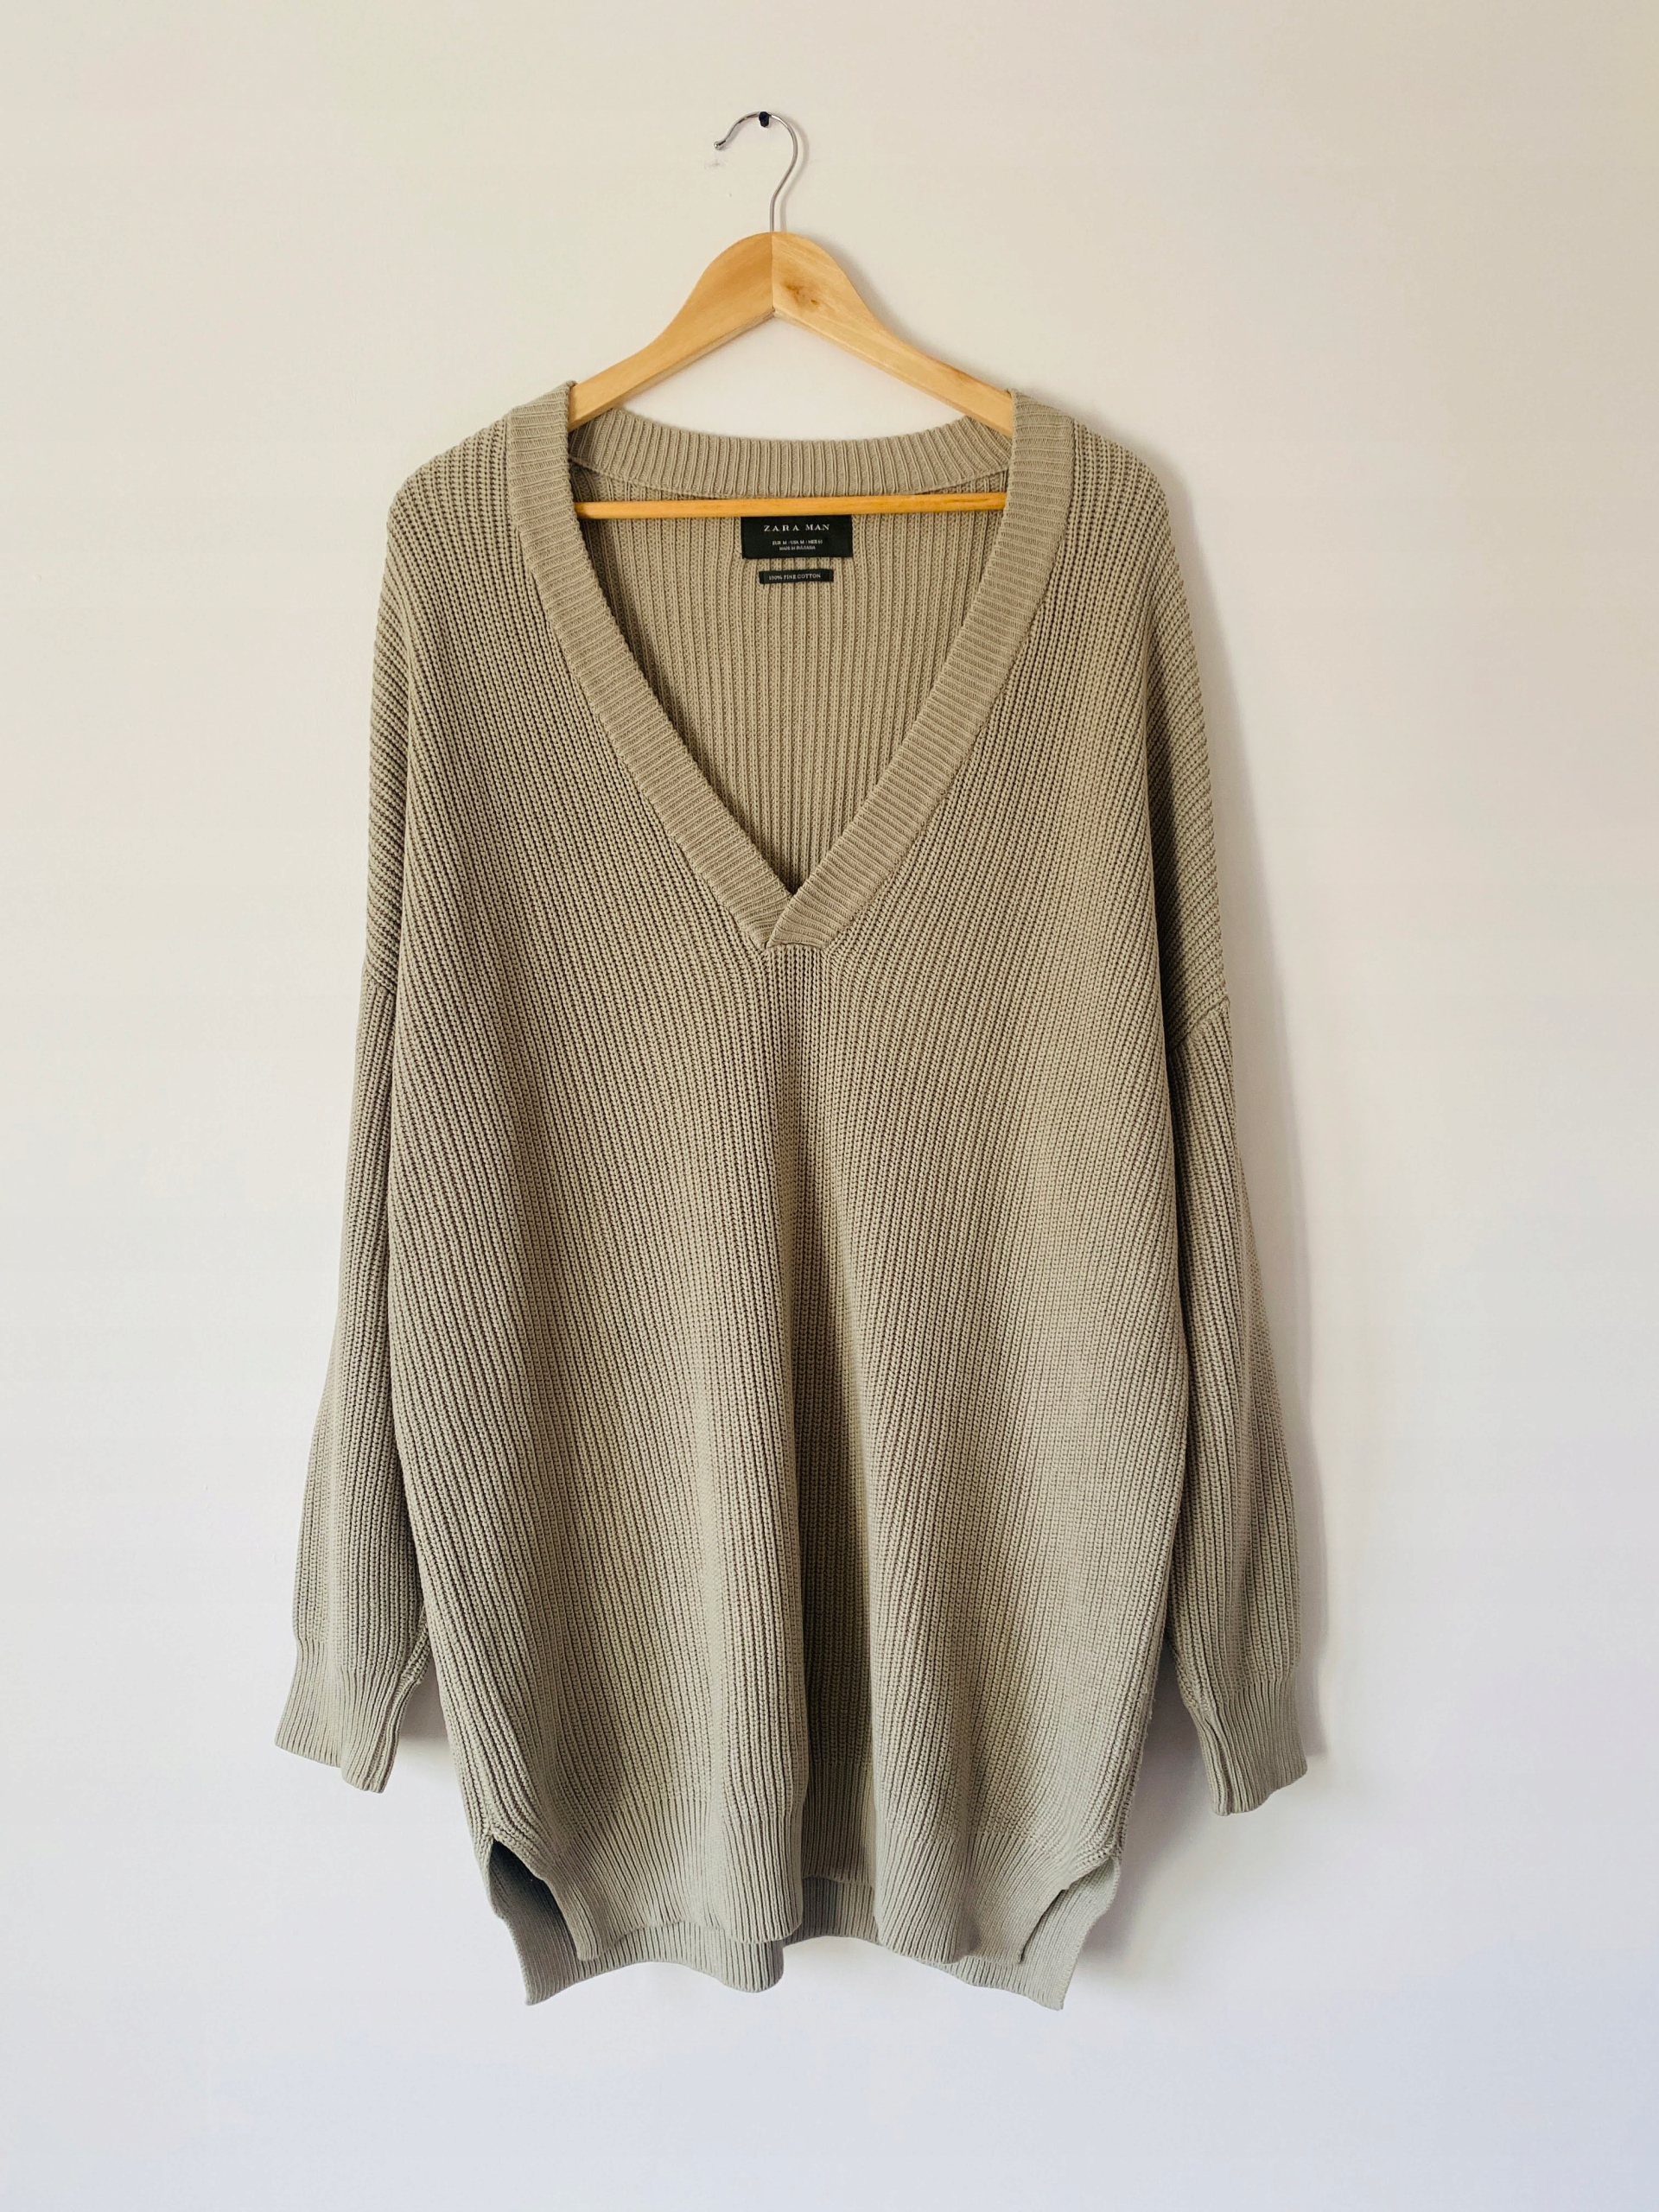 Sweter Zara Man M luźny krój 100% bawełna